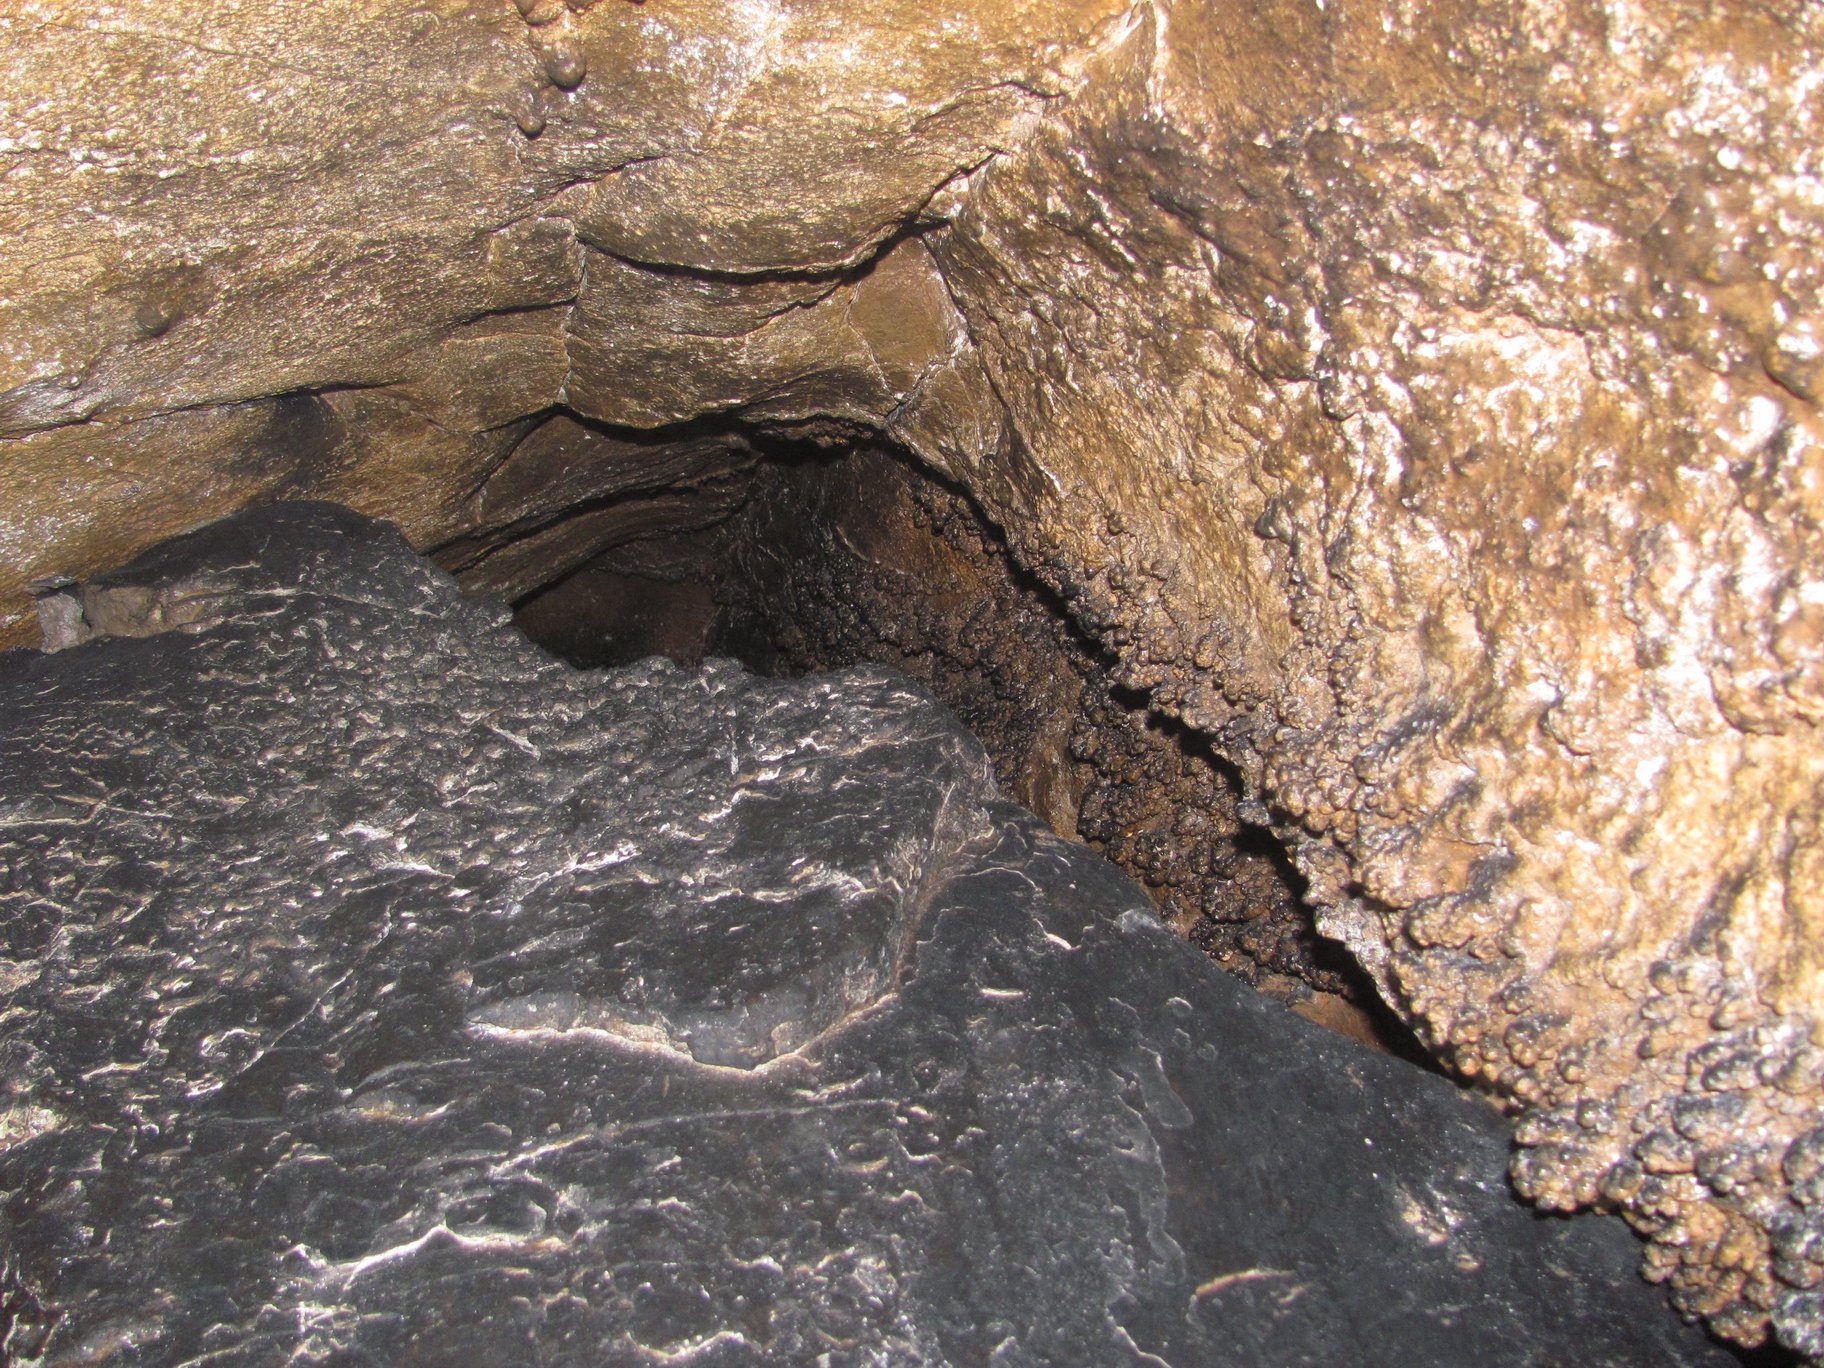 Лаклы пещера пещера Башкирия